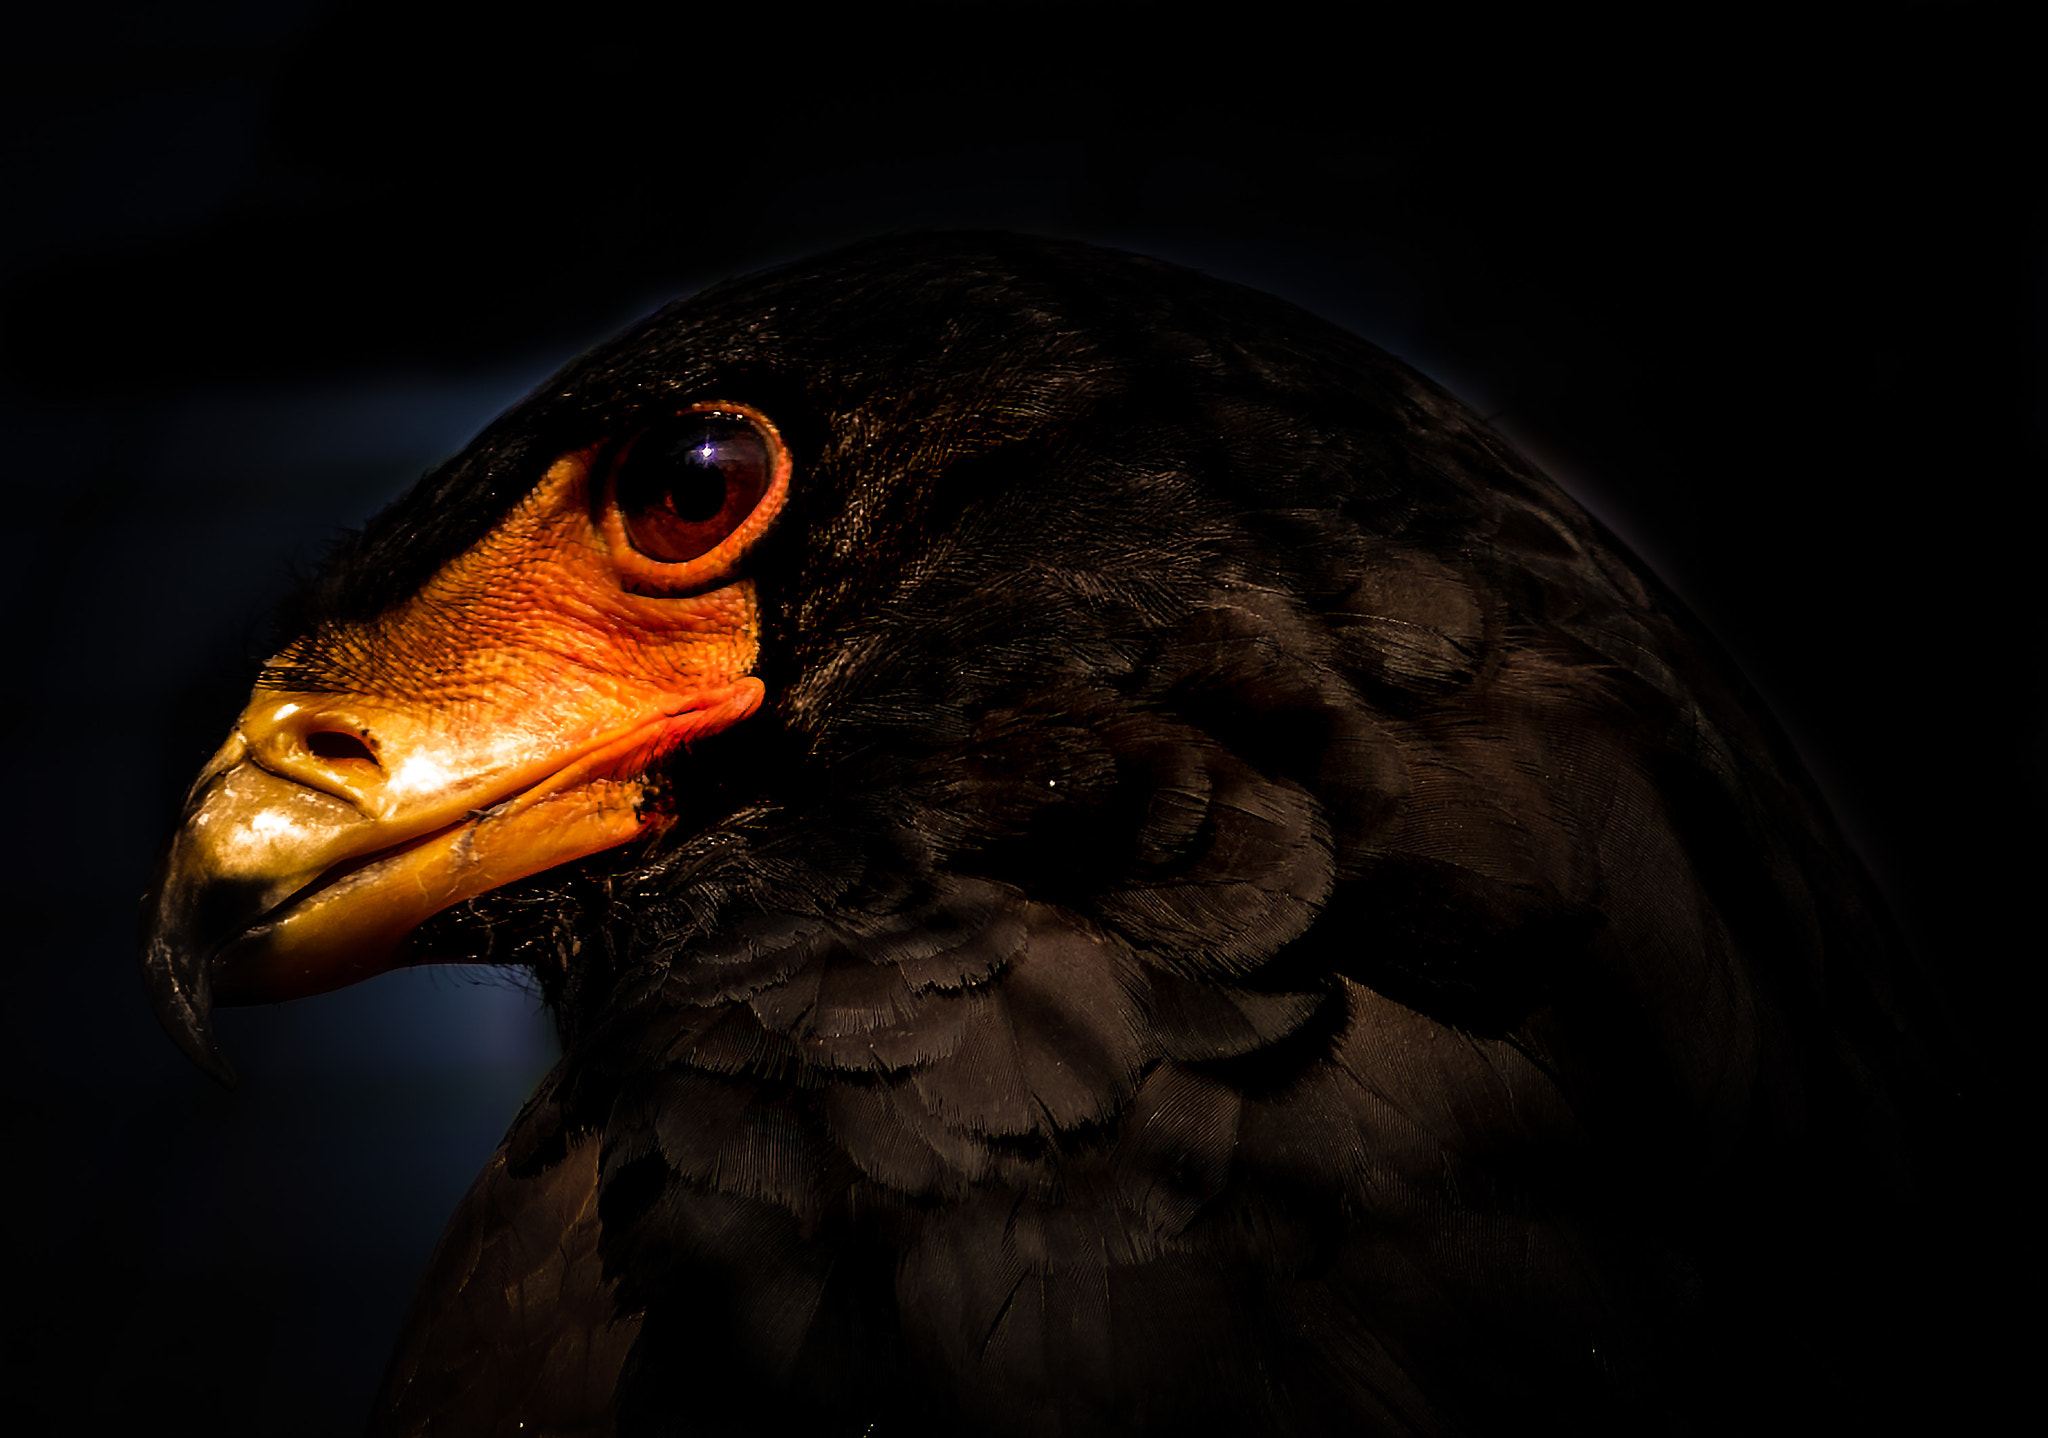 Nikon D800 + AF Nikkor 180mm f/2.8 IF-ED sample photo. Bateleur eagle profile photography